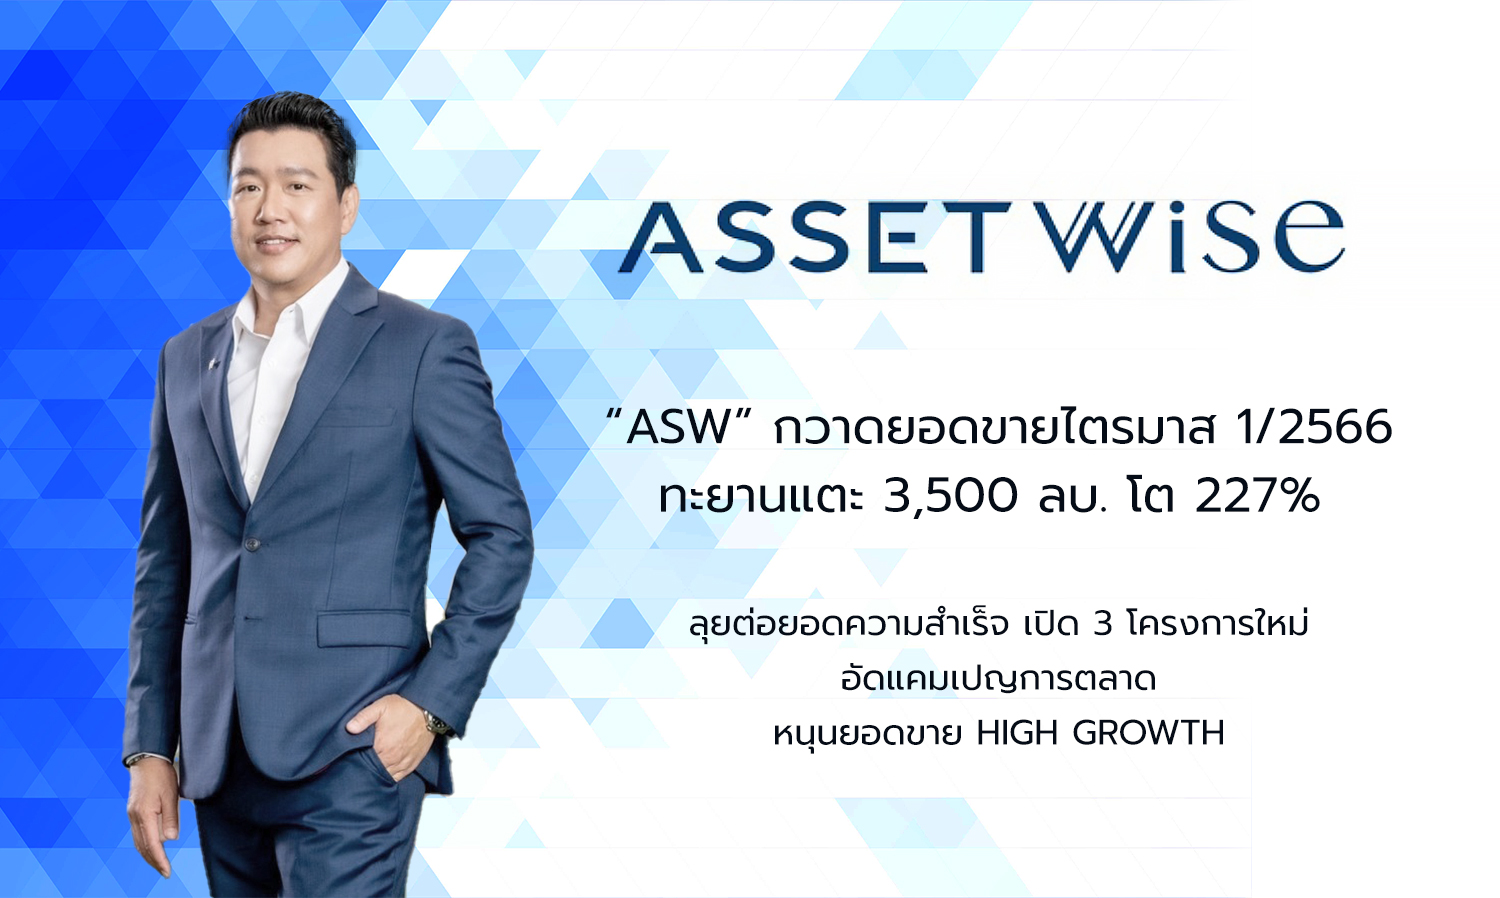 “ASW” กวาดยอดขายไตรมาส 1/2566 ทะยานแตะ 3,500 ลบ. โต 227% ลุยต่อยอดความสำเร็จเปิด 3 โครงการใหม่ อัดแคมเปญการตลาดหนุนยอดขายHigh Growth